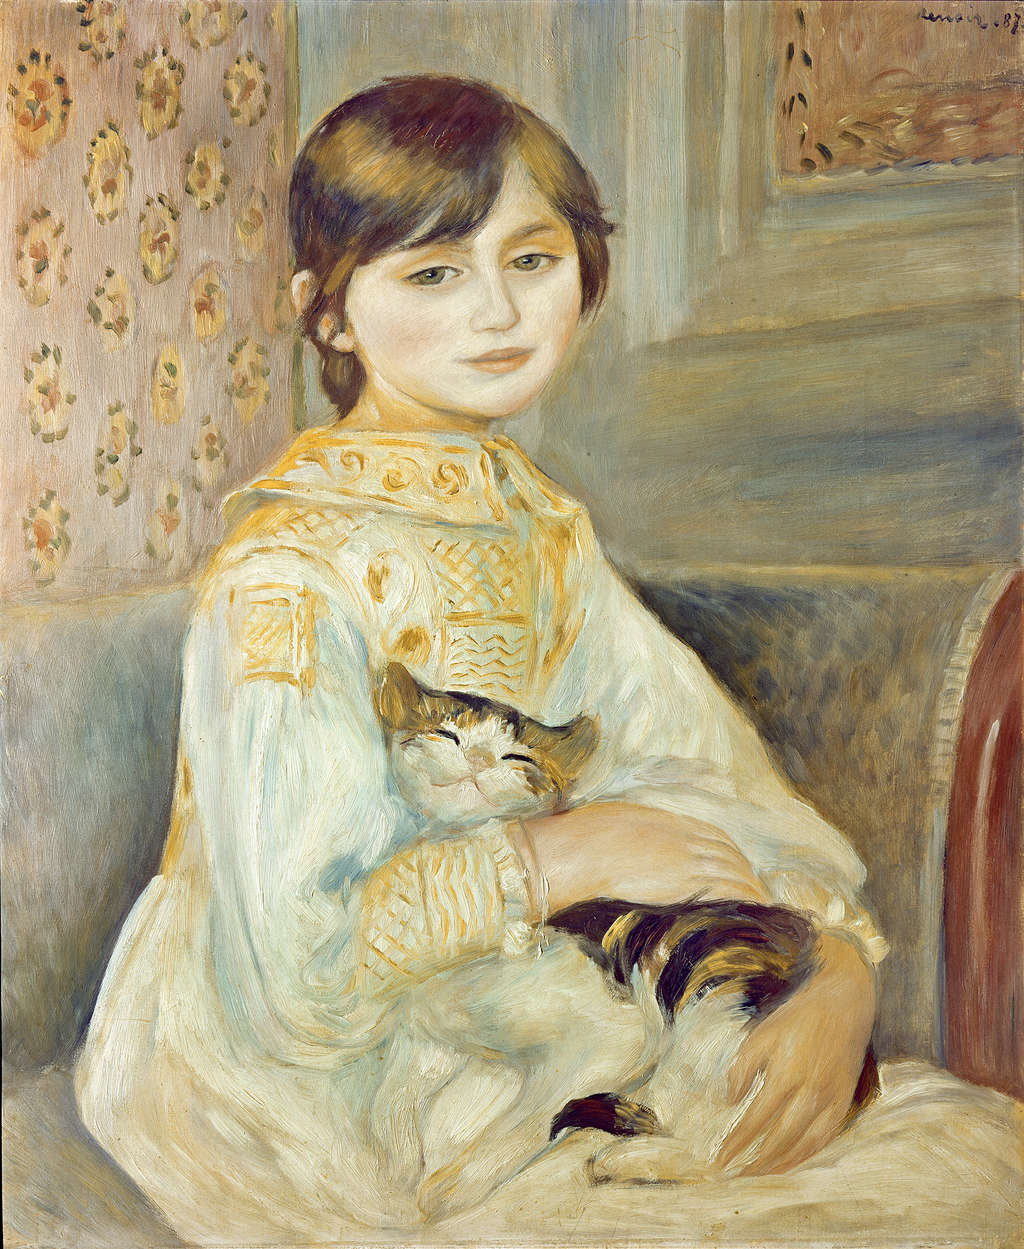             Mademoiselle Julie with cat mural by Pierre Auguste Renoir
        